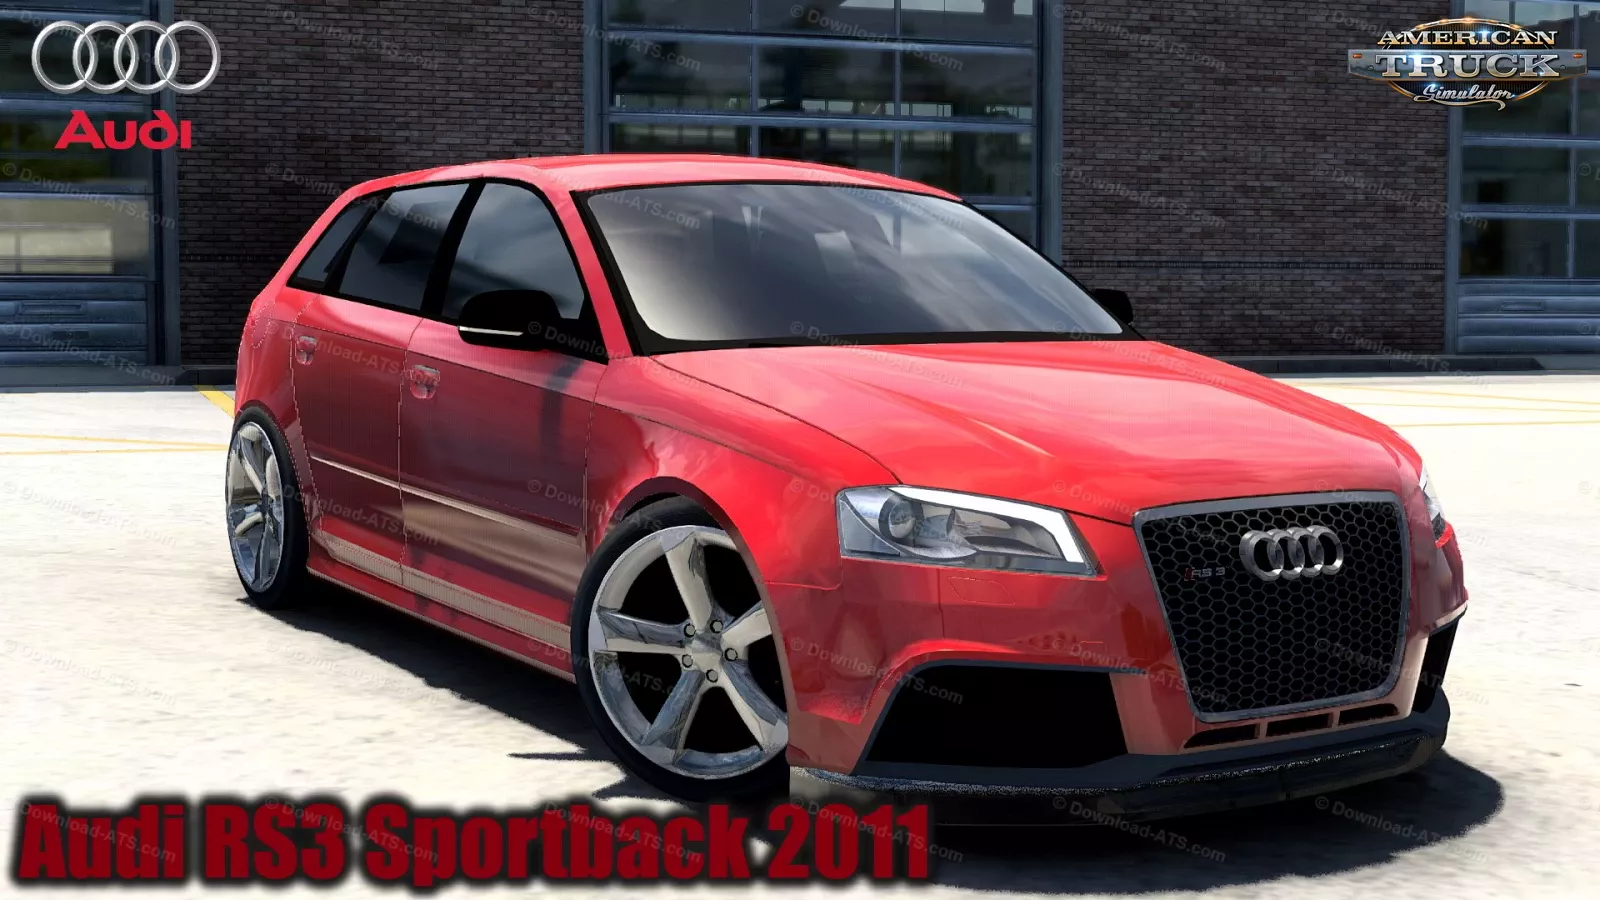 Audi RS3 Sportback 2011 + Interior v2.2 (1.50.x) for ATS